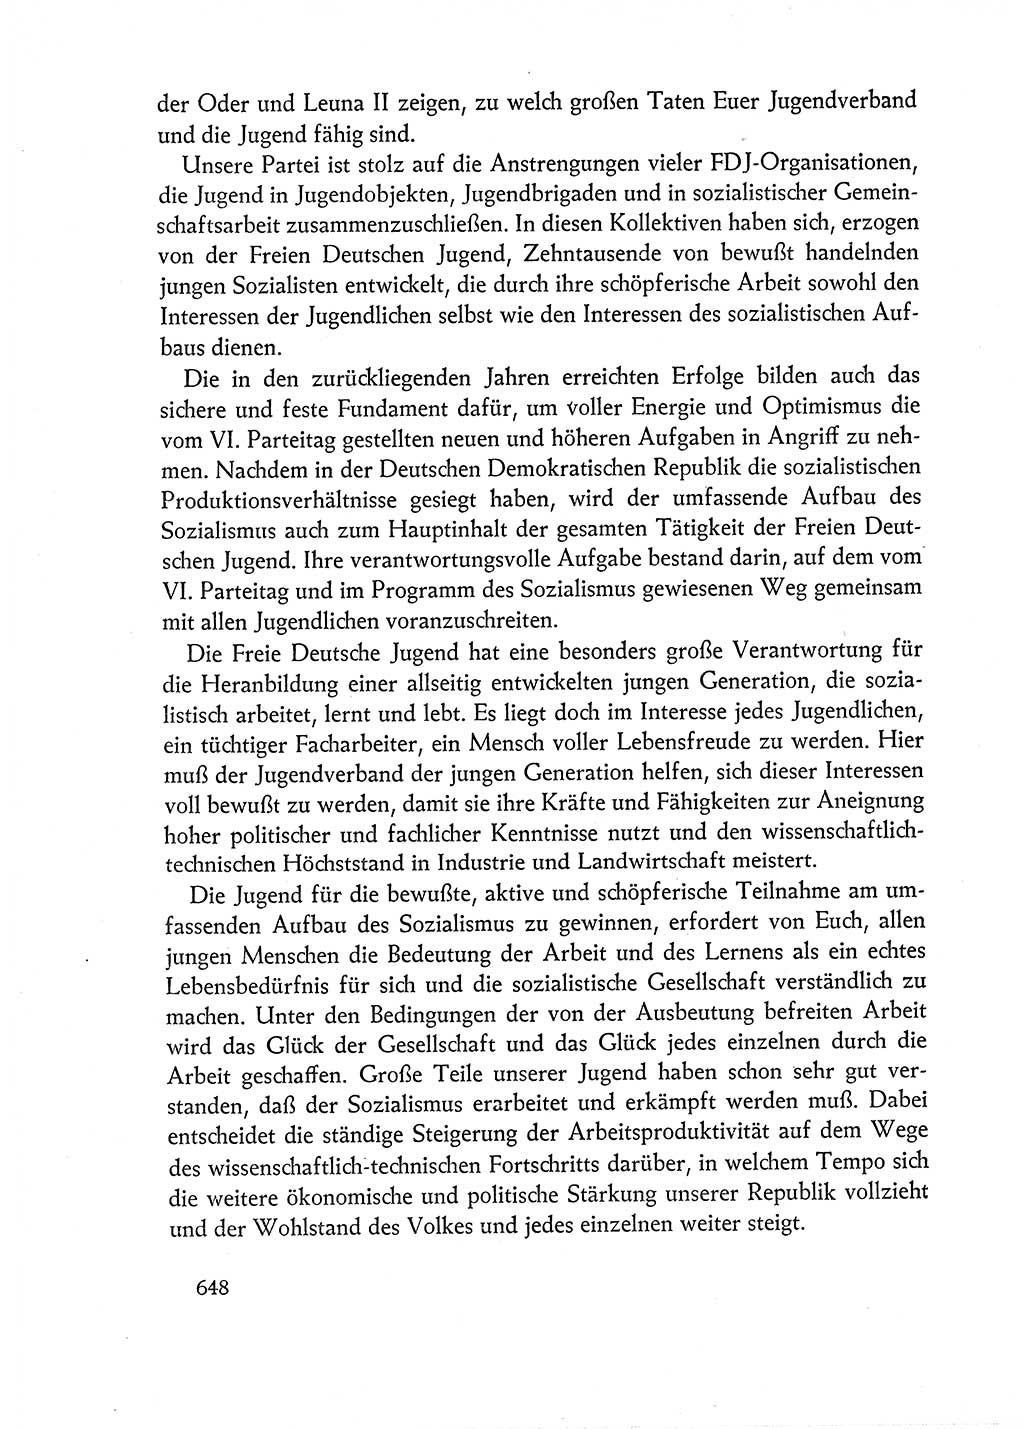 Dokumente der Sozialistischen Einheitspartei Deutschlands (SED) [Deutsche Demokratische Republik (DDR)] 1962-1963, Seite 648 (Dok. SED DDR 1962-1963, S. 648)